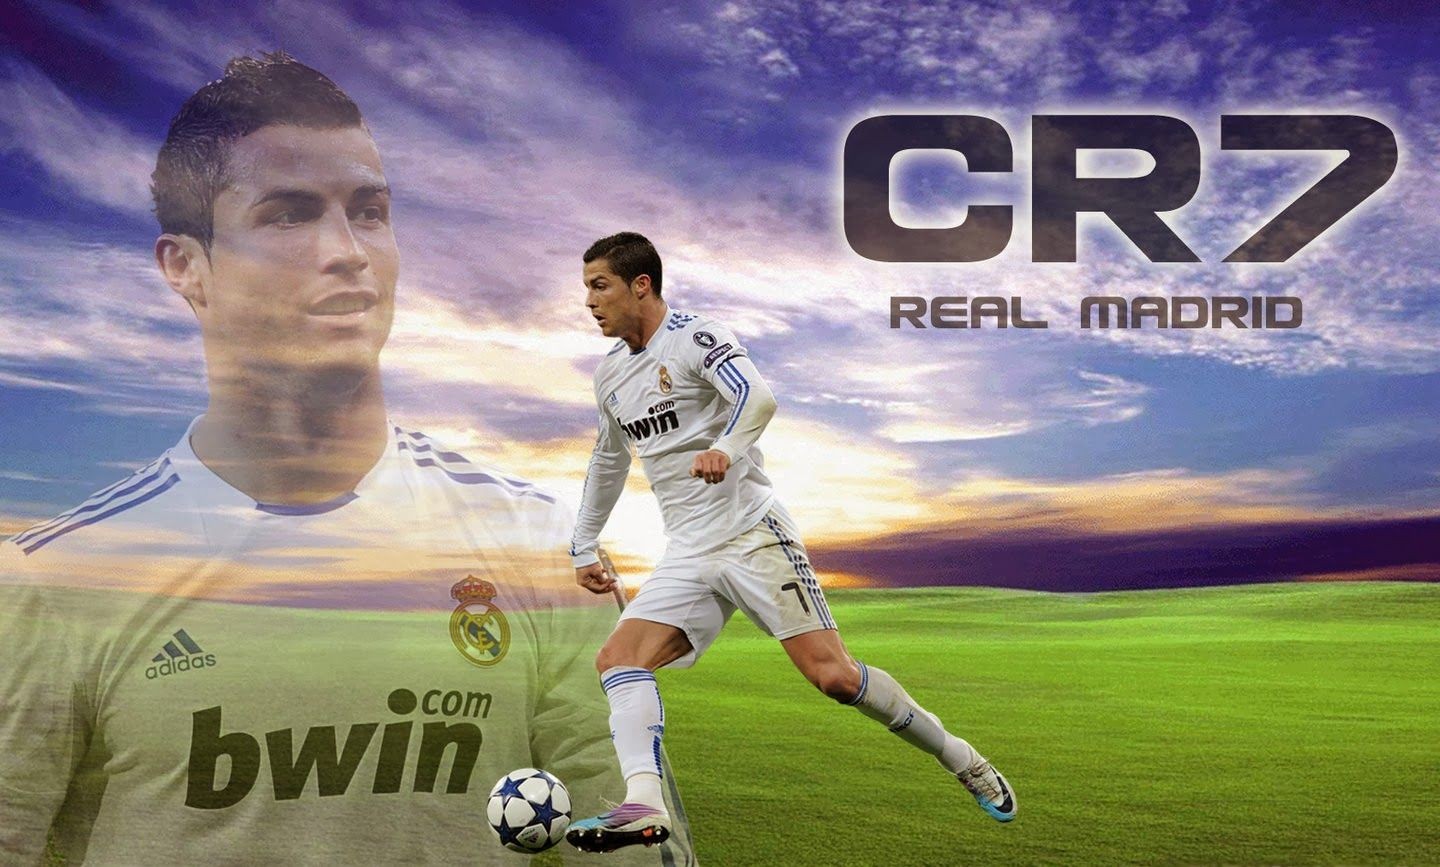 Imagenes De Real Madrid Cr7 - HD Wallpaper 